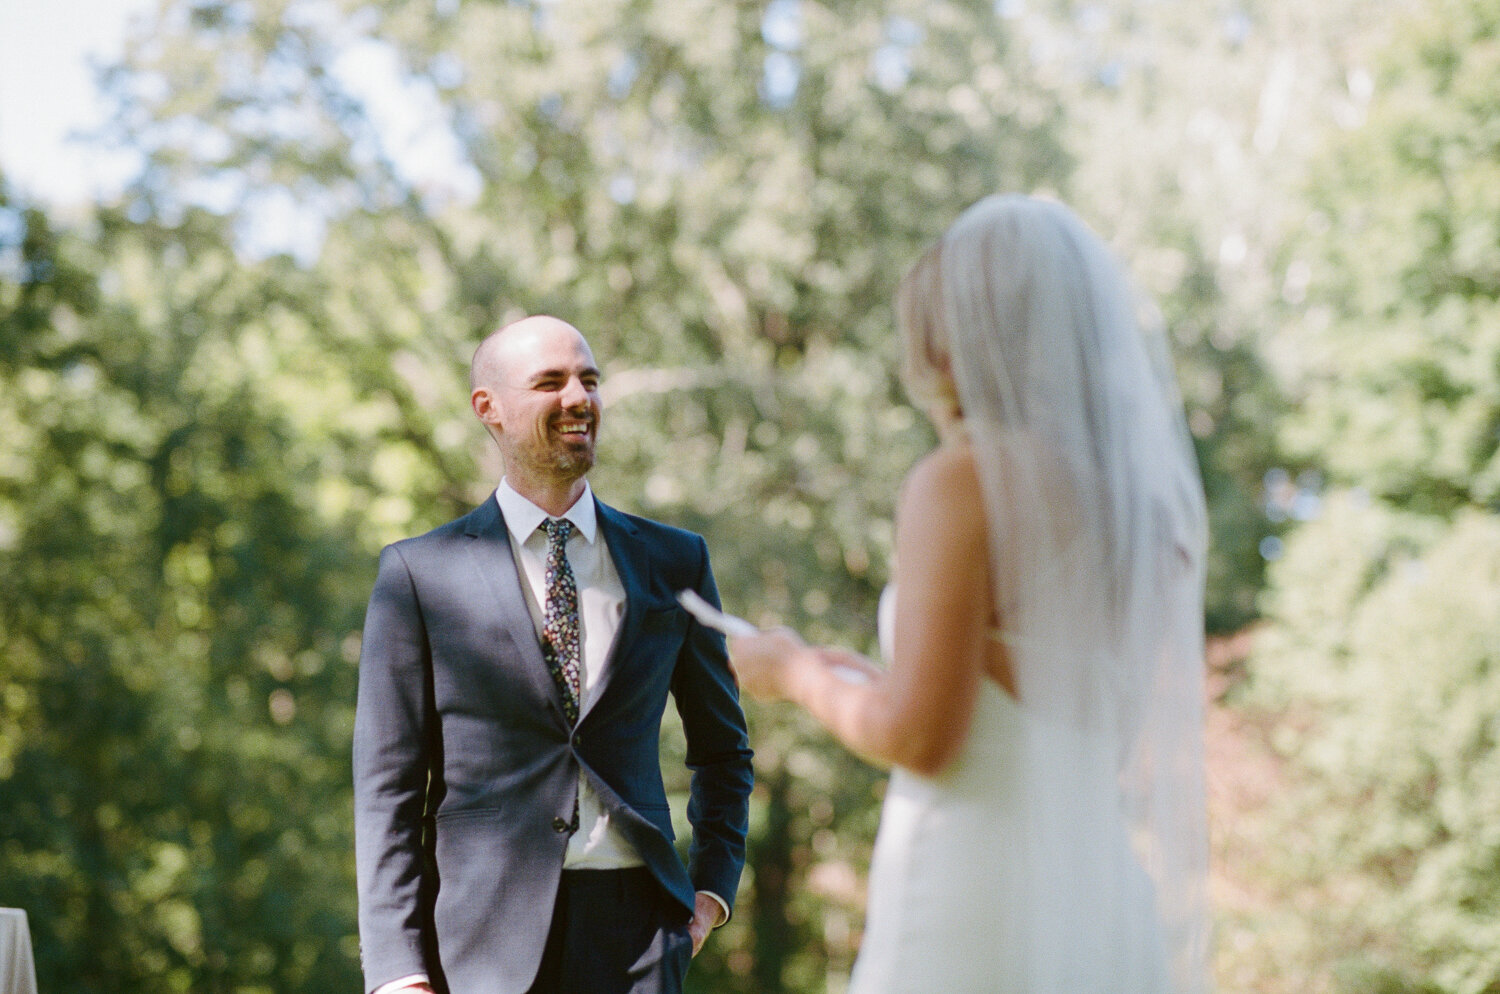 Analog-Film-Micro-Wedding-Photos-Inspiration-Backyard-Toronto-Ontario-39.JPG